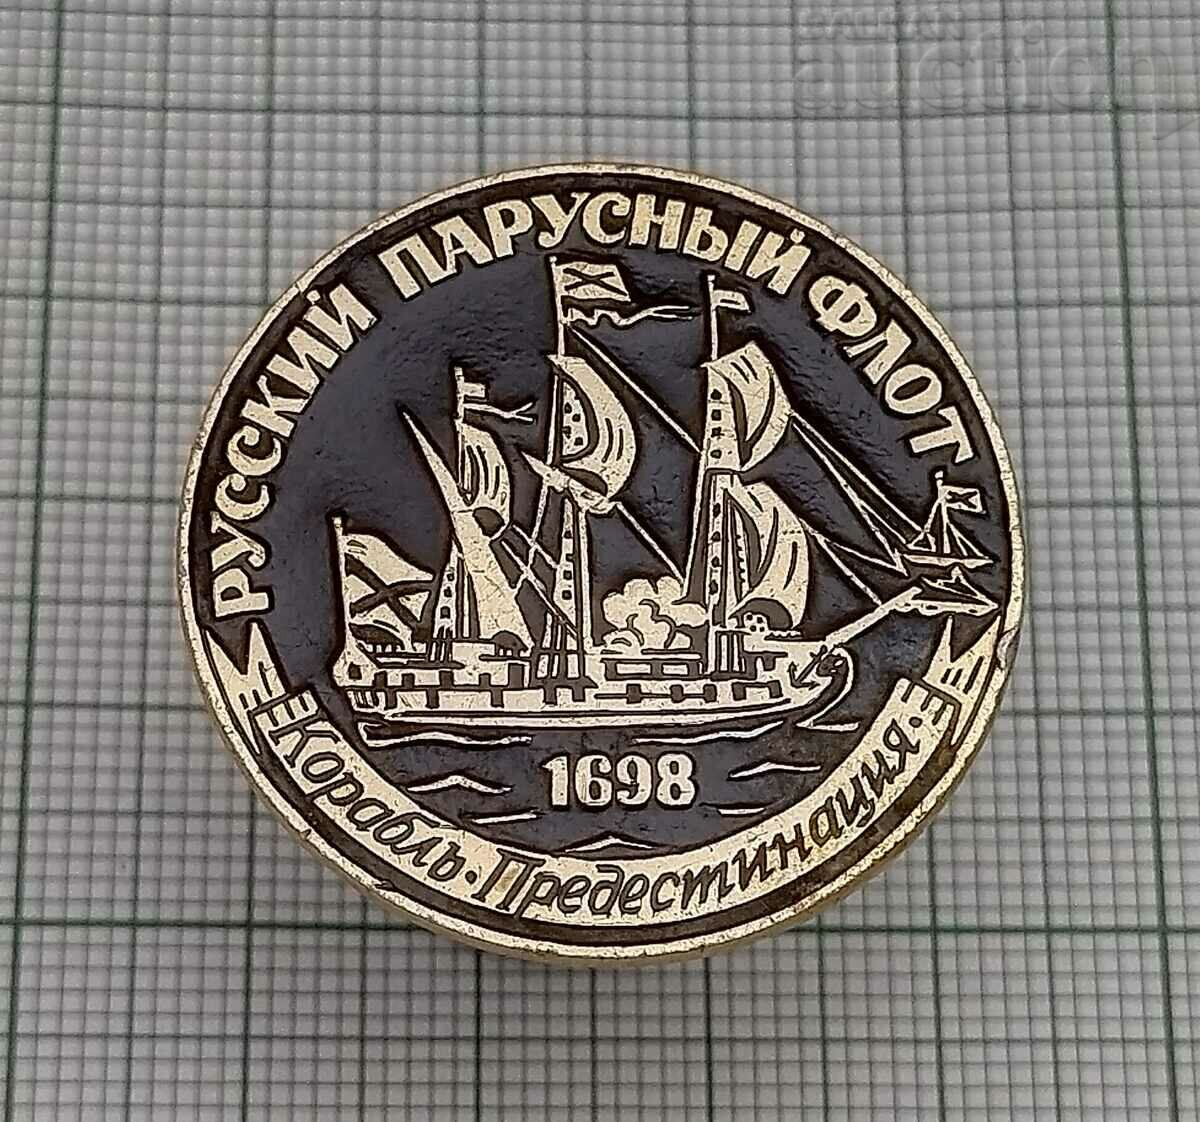 RUSSIAN SAILING SHIP BADGE